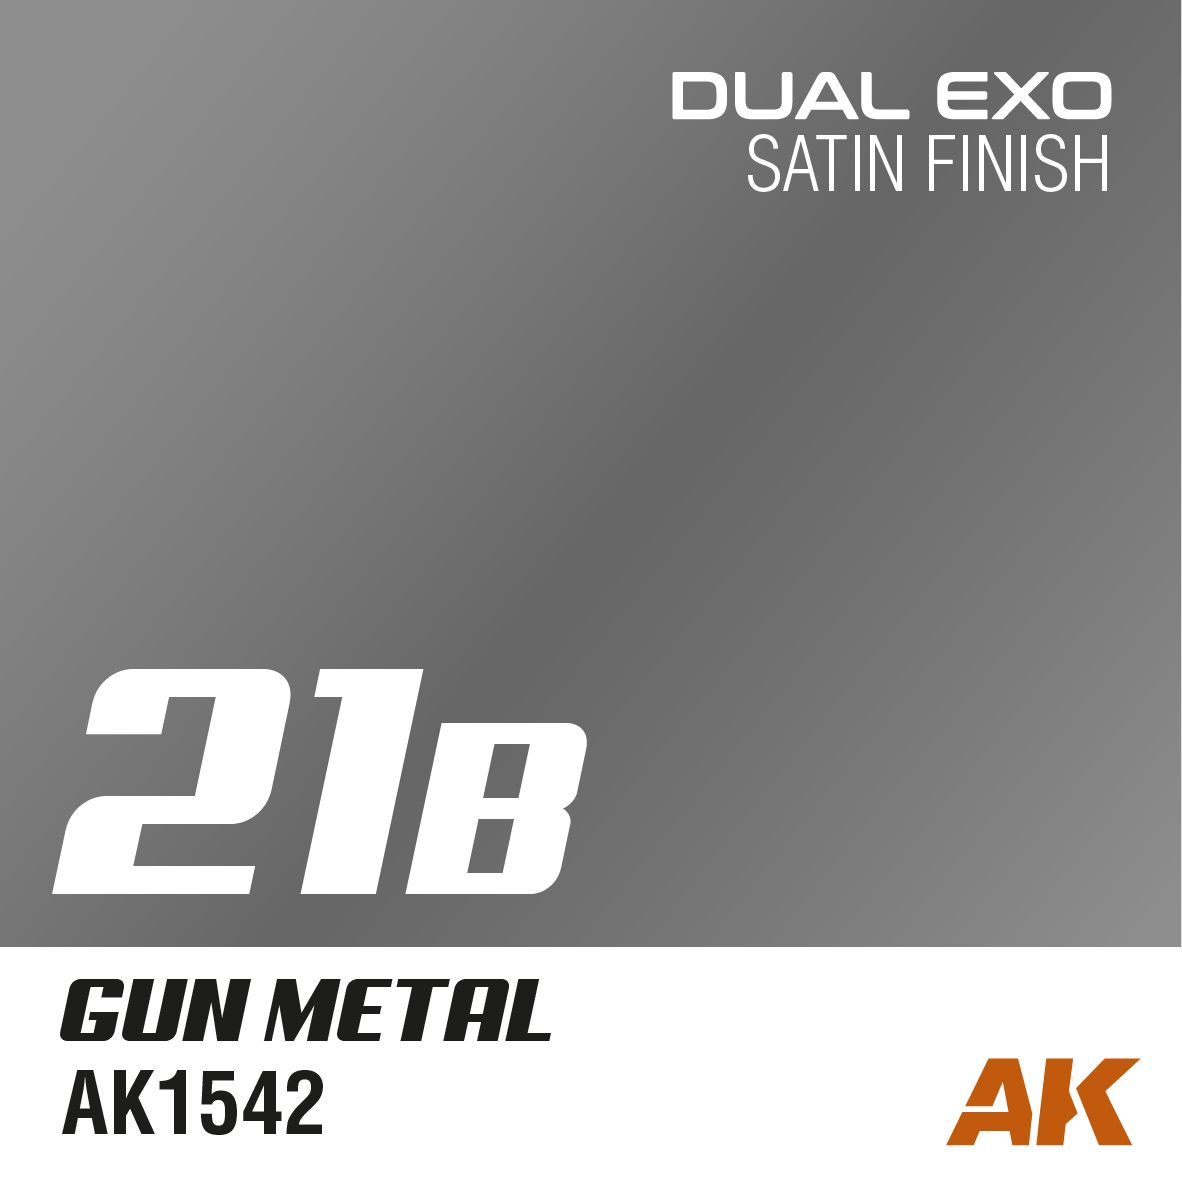 Dual Exo 21B - Gun Metal